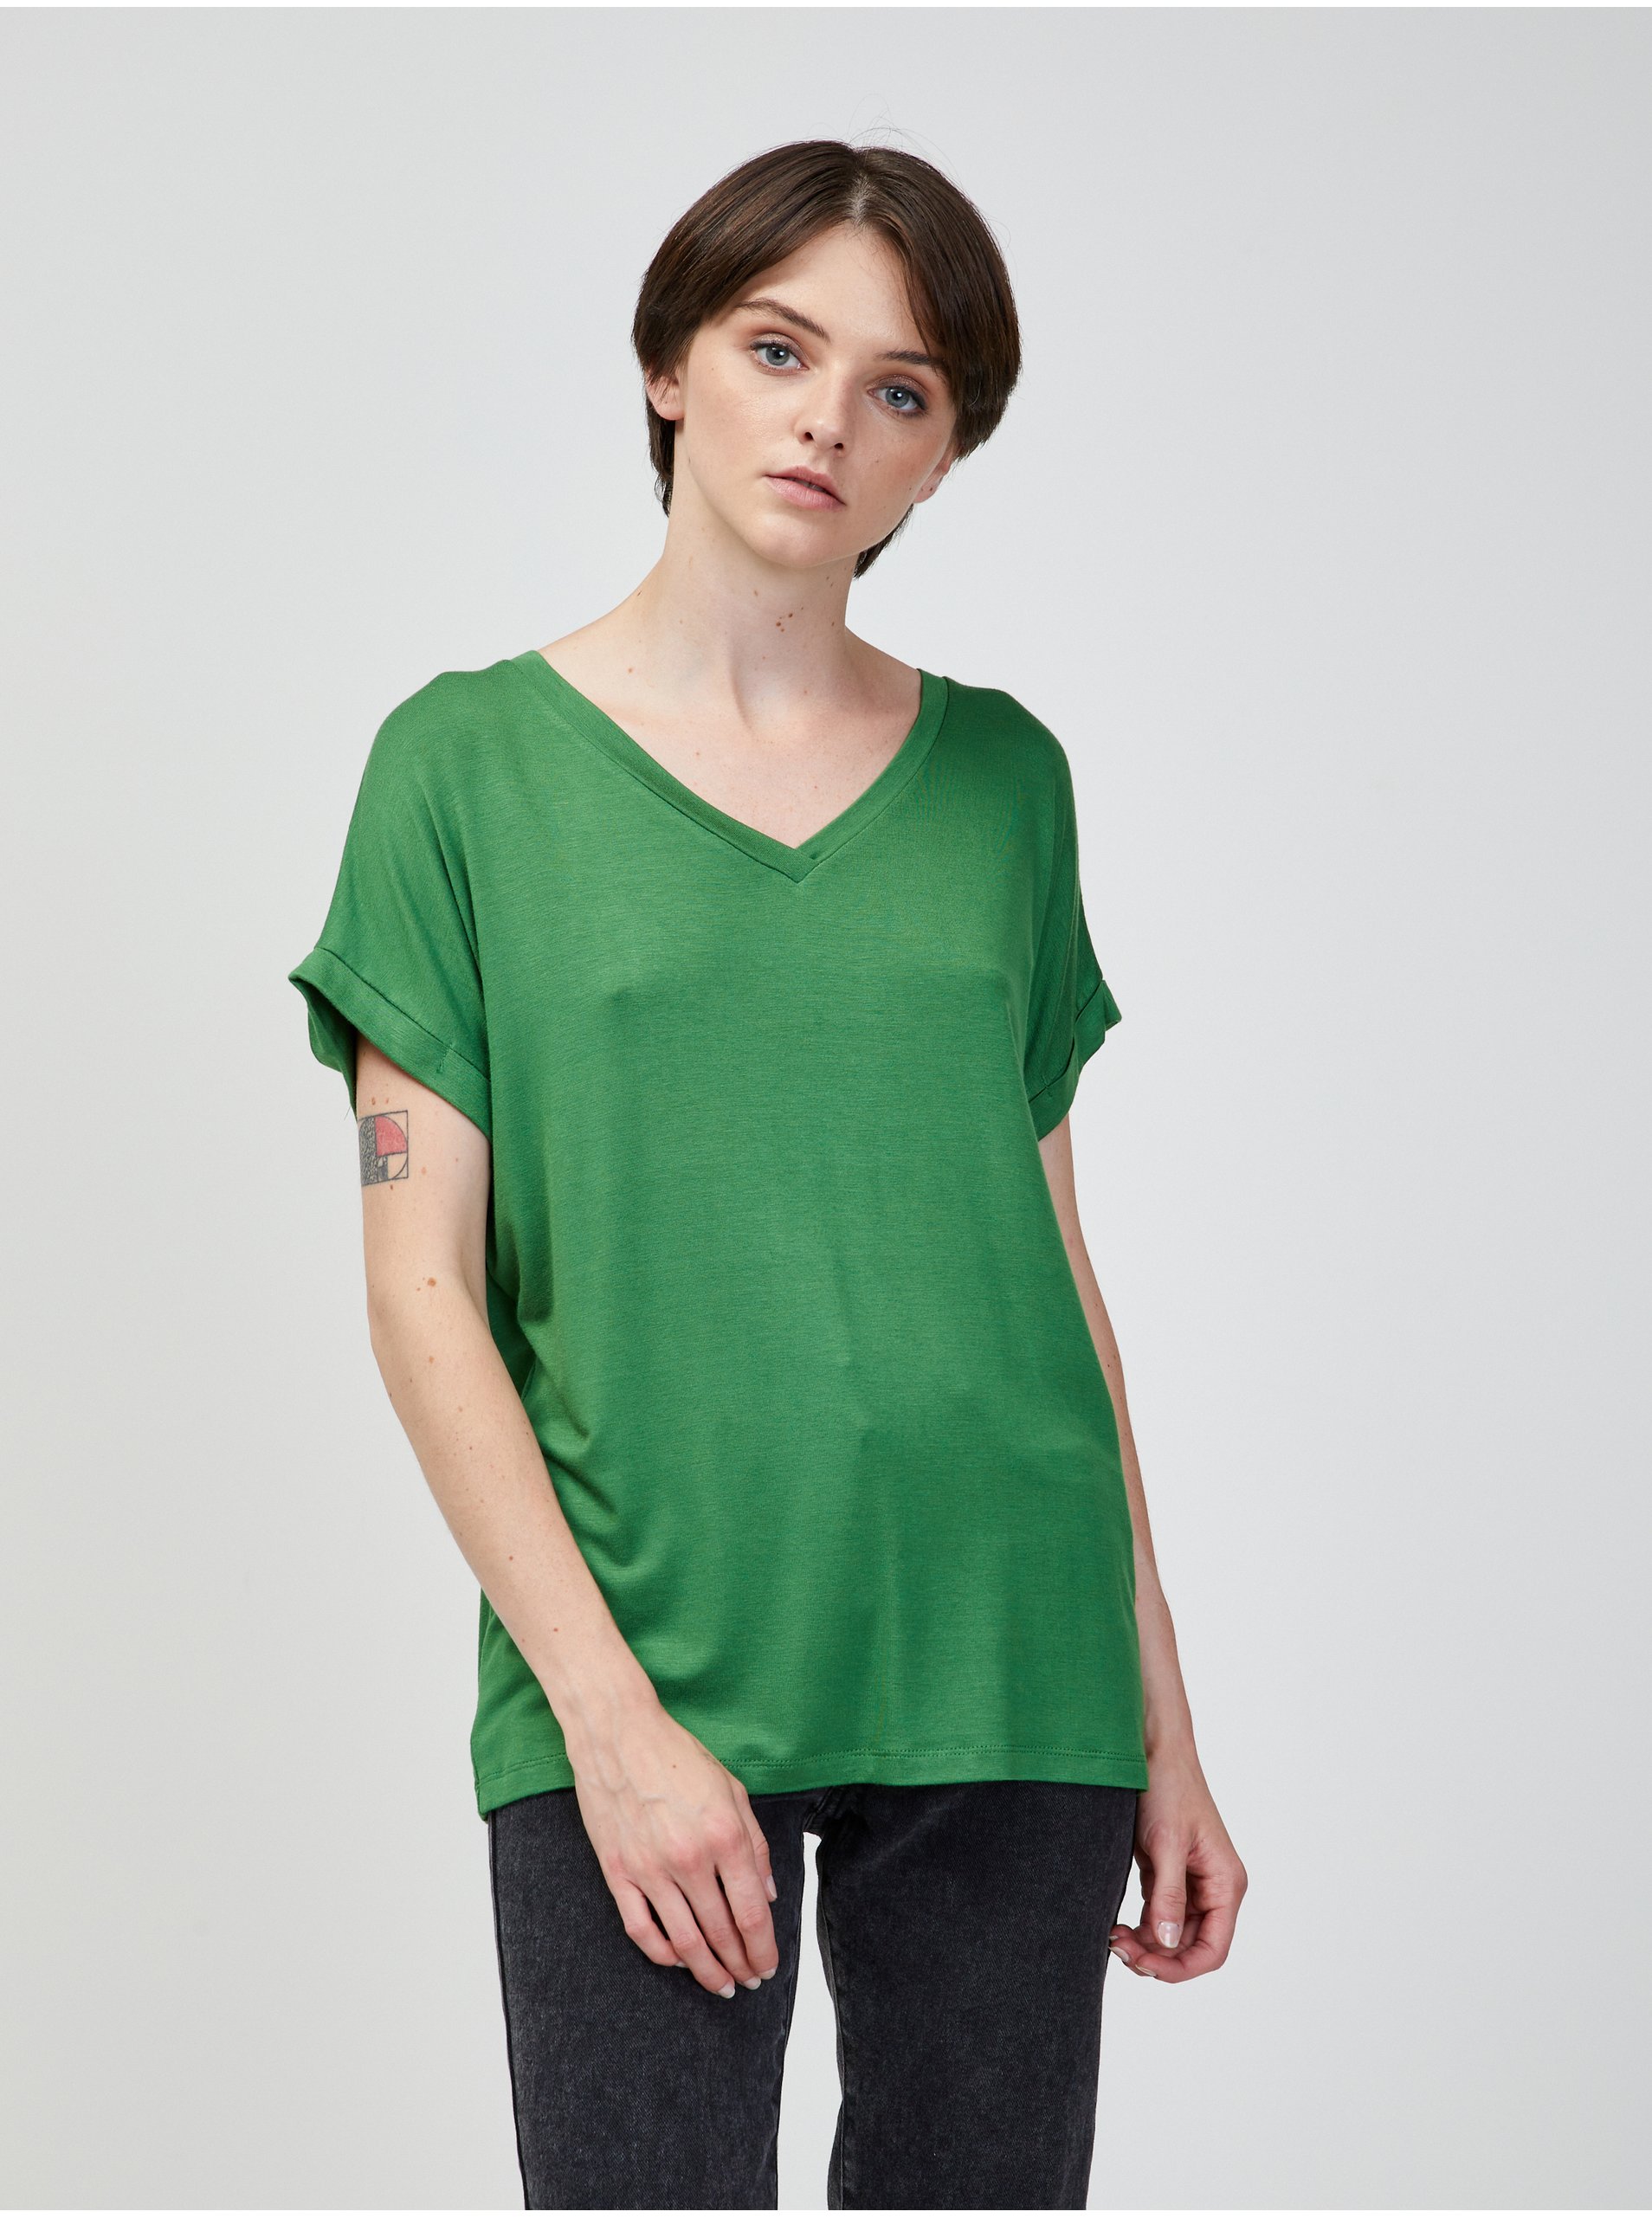 Lacno Topy a tričká pre ženy ZOOT Baseline - zelená